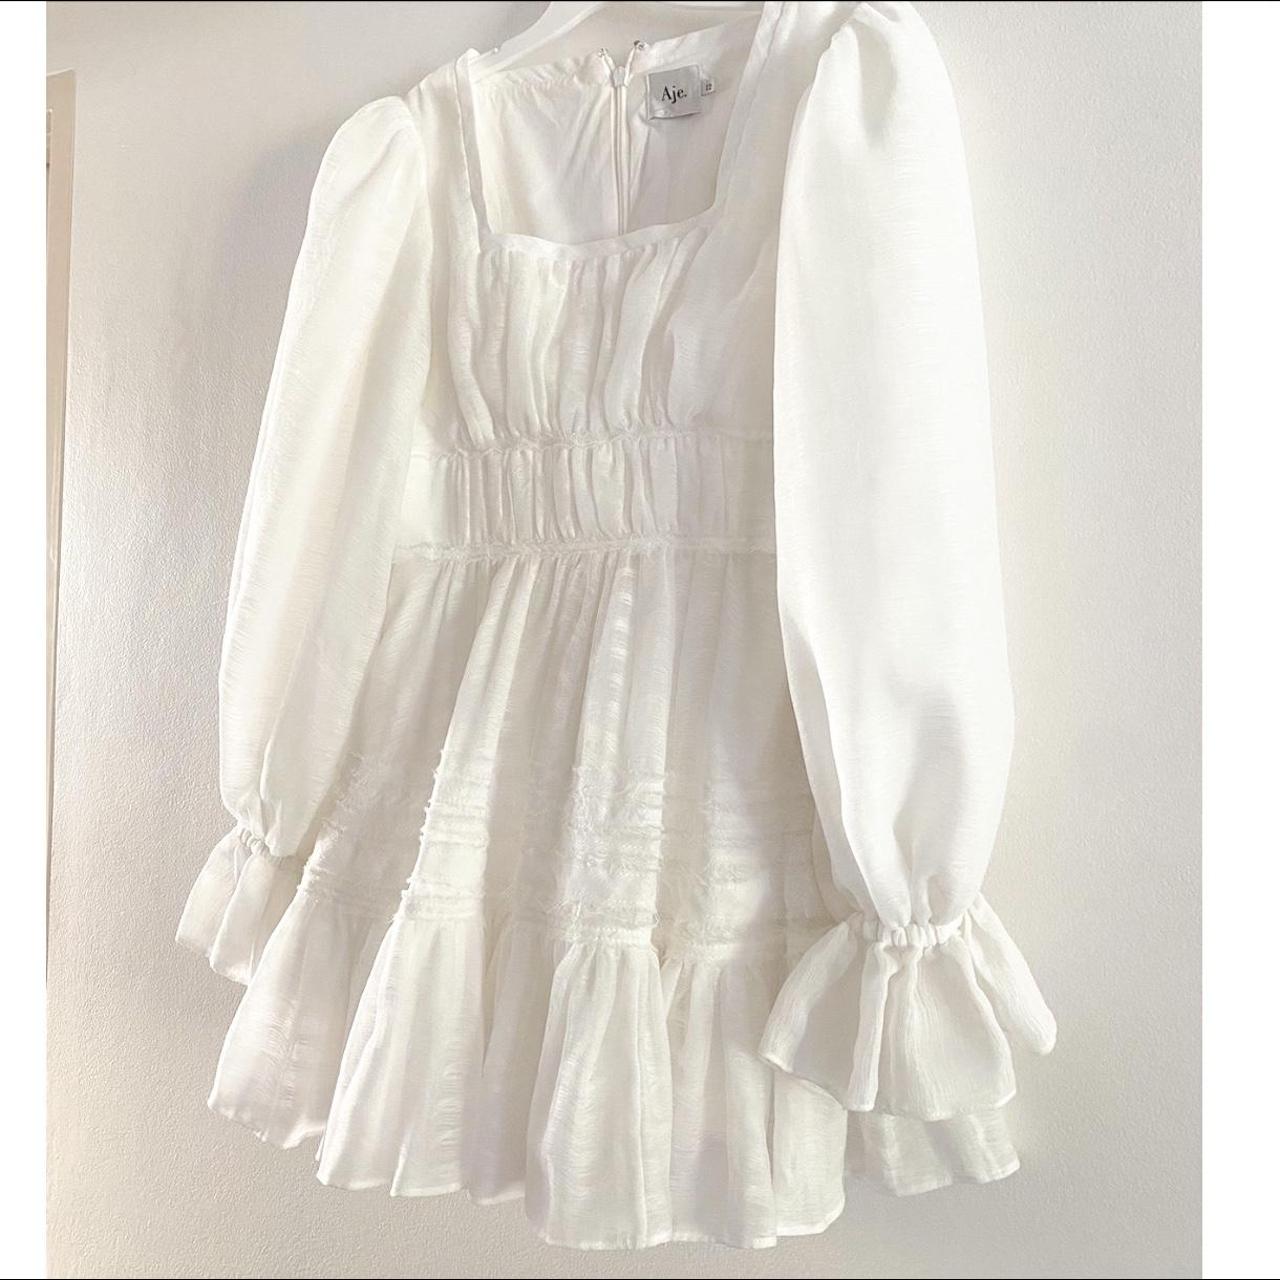 Aje Women's White Dress | Depop